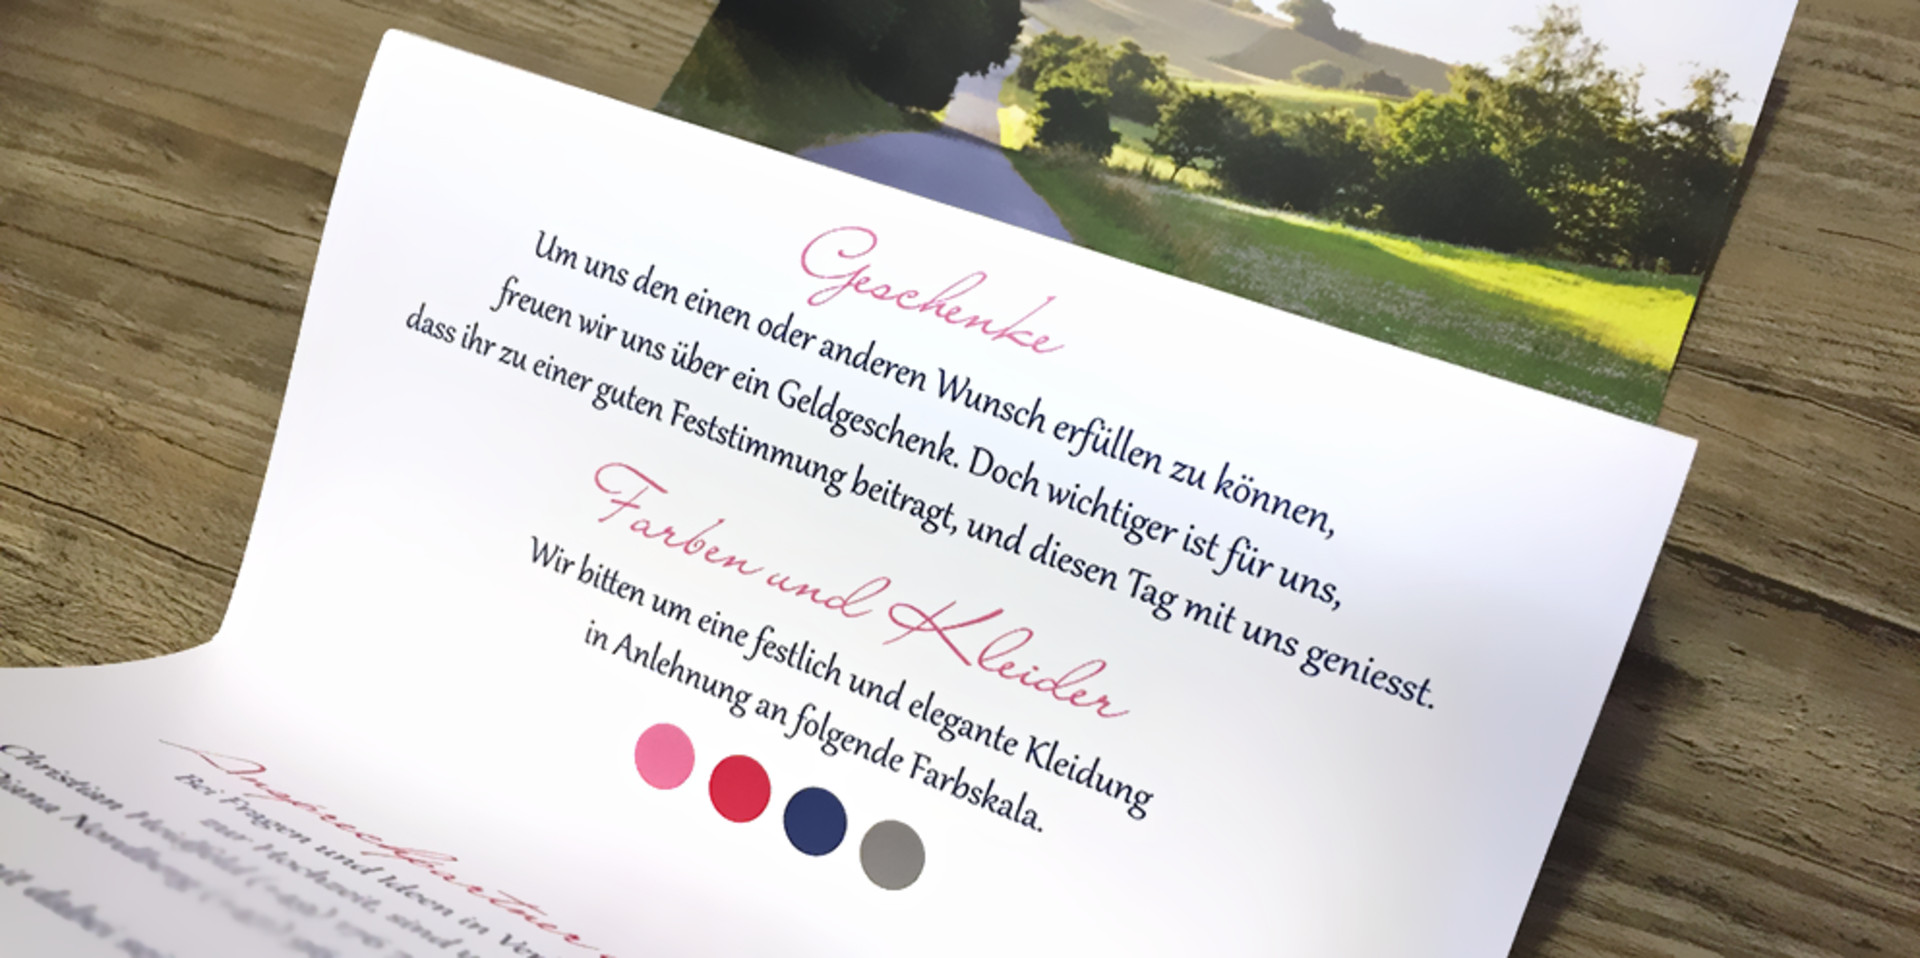 Geldgeschenke Hochzeit Spruch
 Sprüche für Geldgeschenke zur Hochzeit charmant verpackt